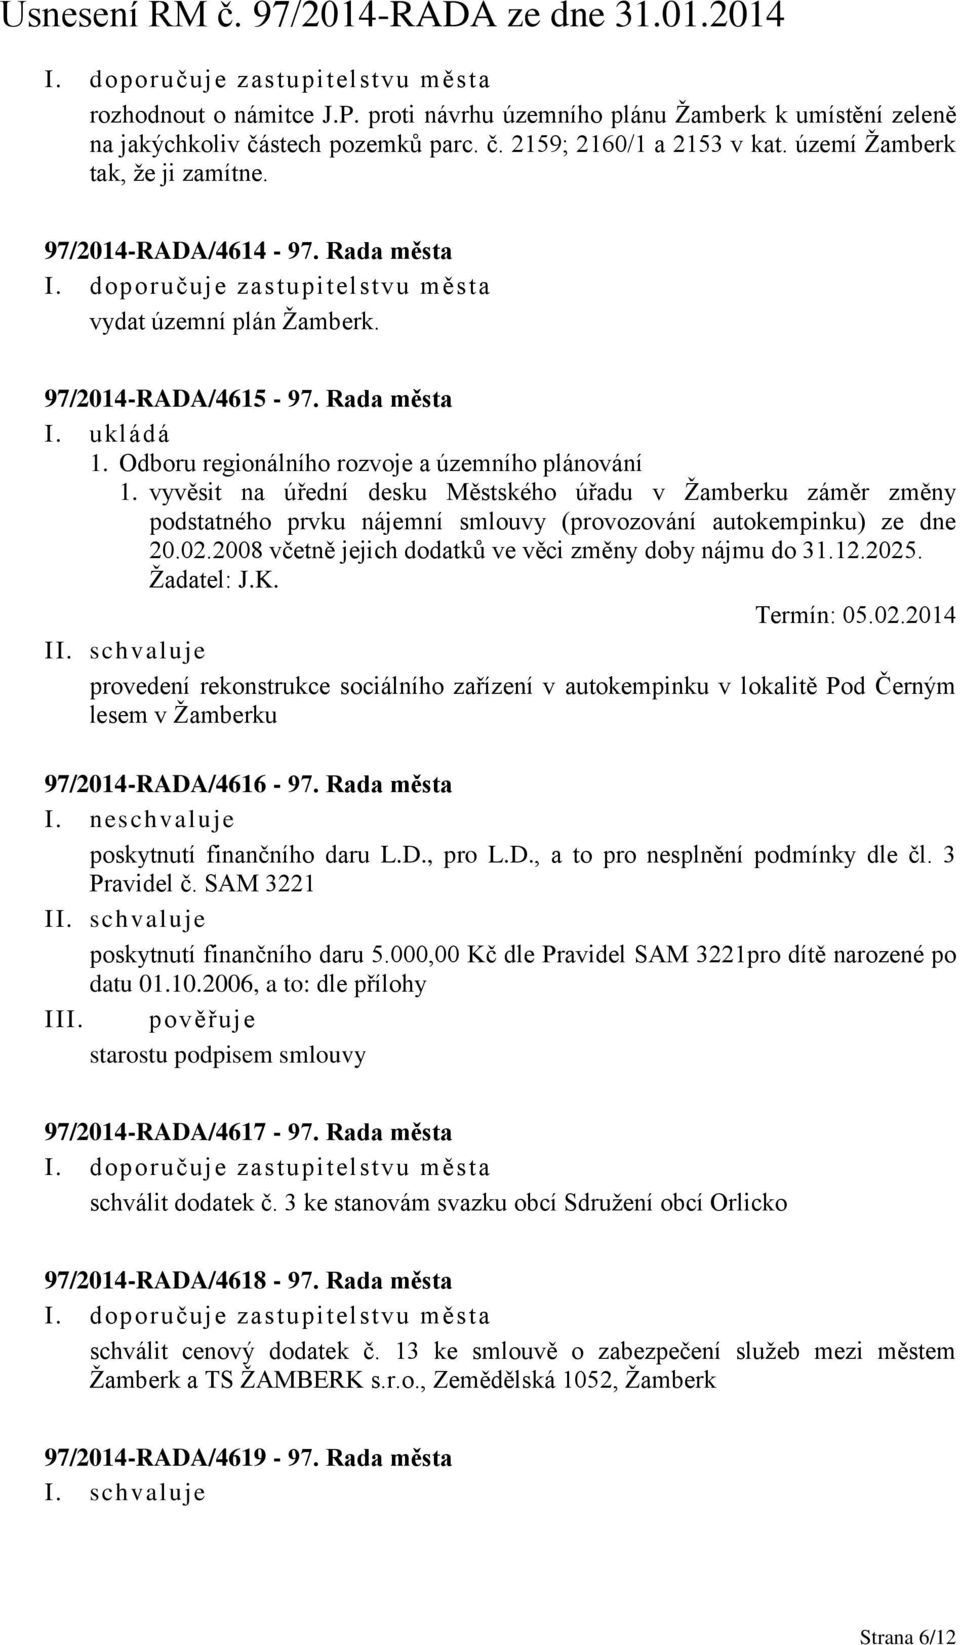 Odboru regionálního rozvoje a územního plánování 1. vyvěsit na úřední desku Městského úřadu v Žamberku záměr změny podstatného prvku nájemní smlouvy (provozování autokempinku) ze dne 20.02.